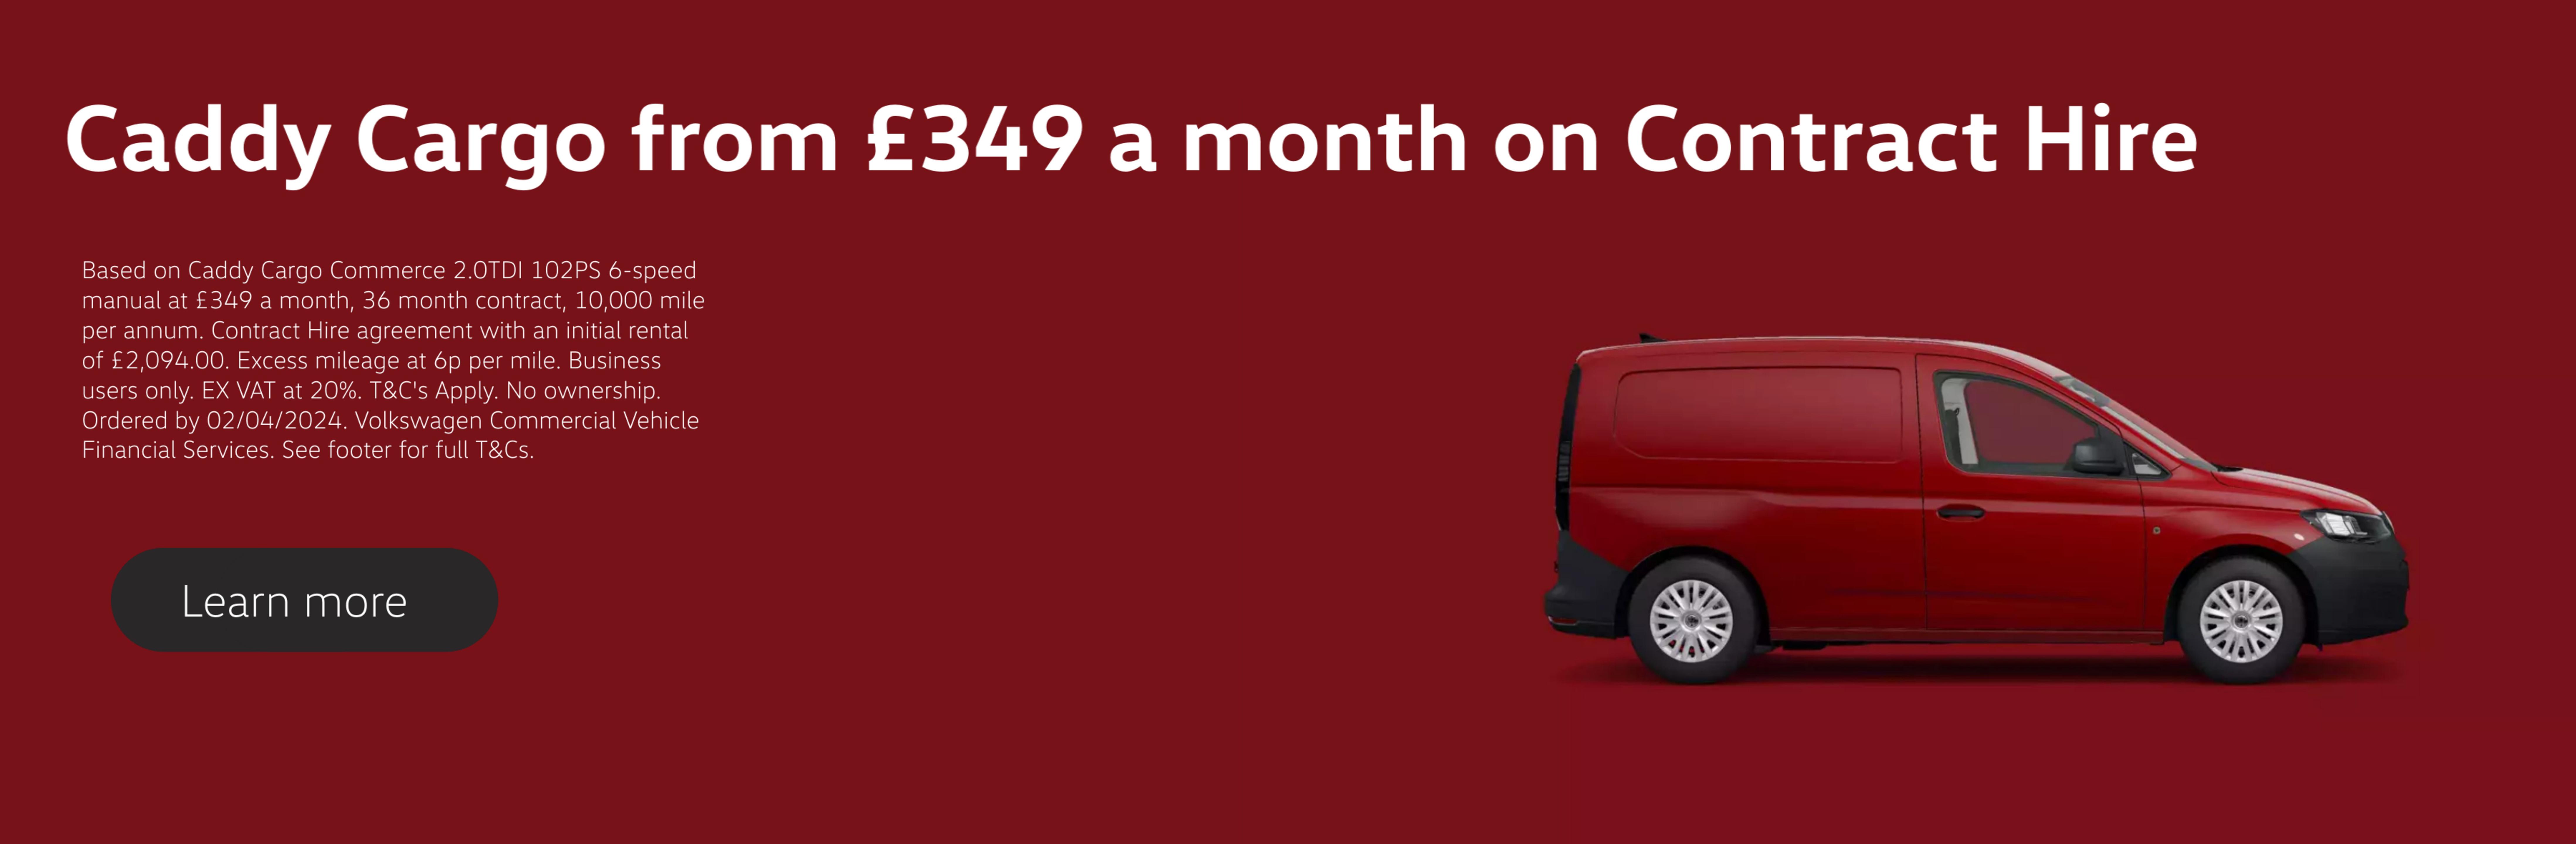 Caddy Cargo £349 Offer